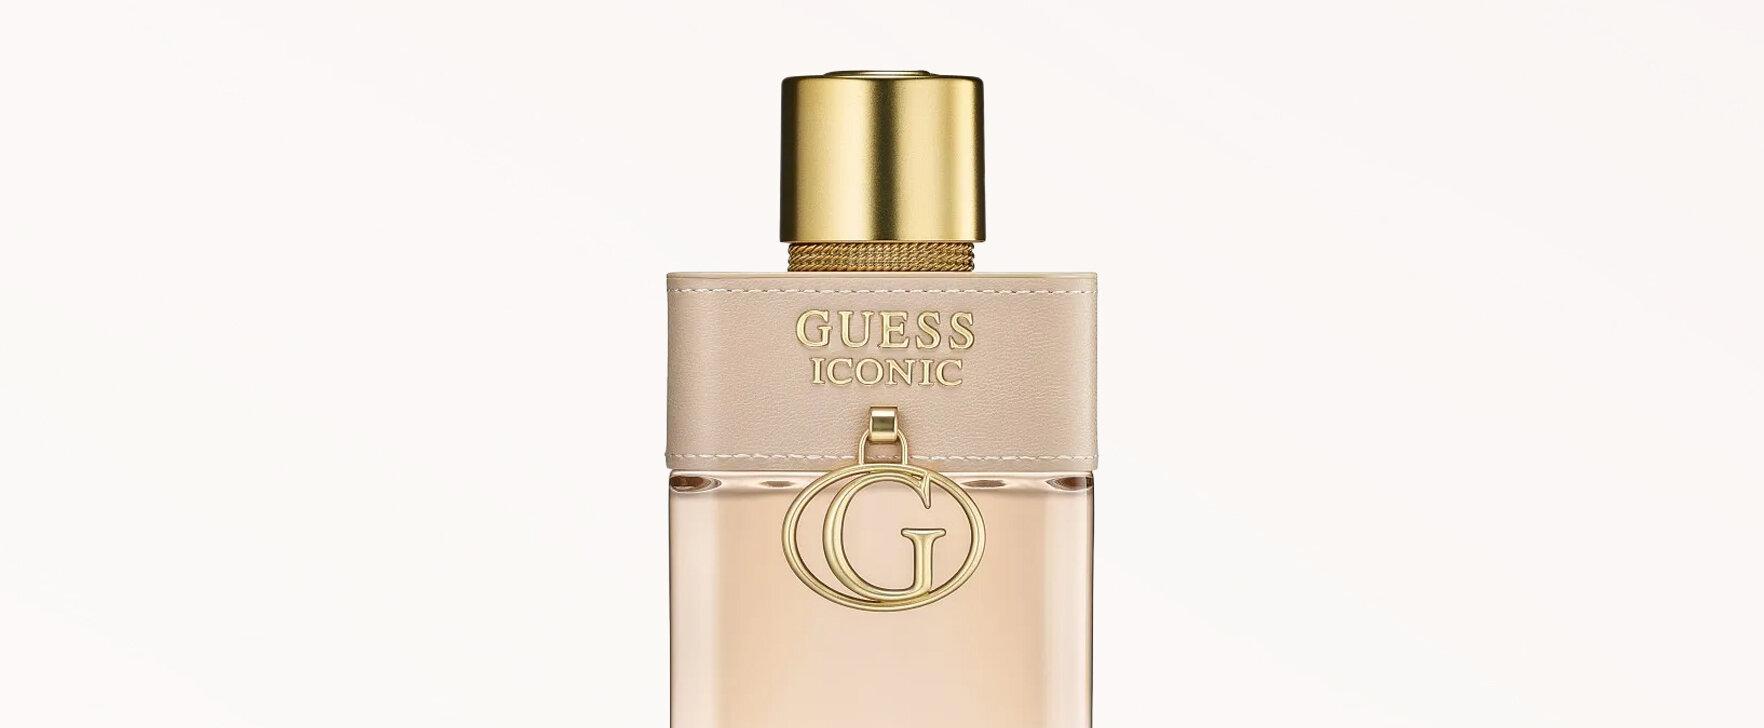 Eine Huldigung an Sinnlichkeit und Glamour: Das neue Eau de Parfum „Iconic“ von Guess